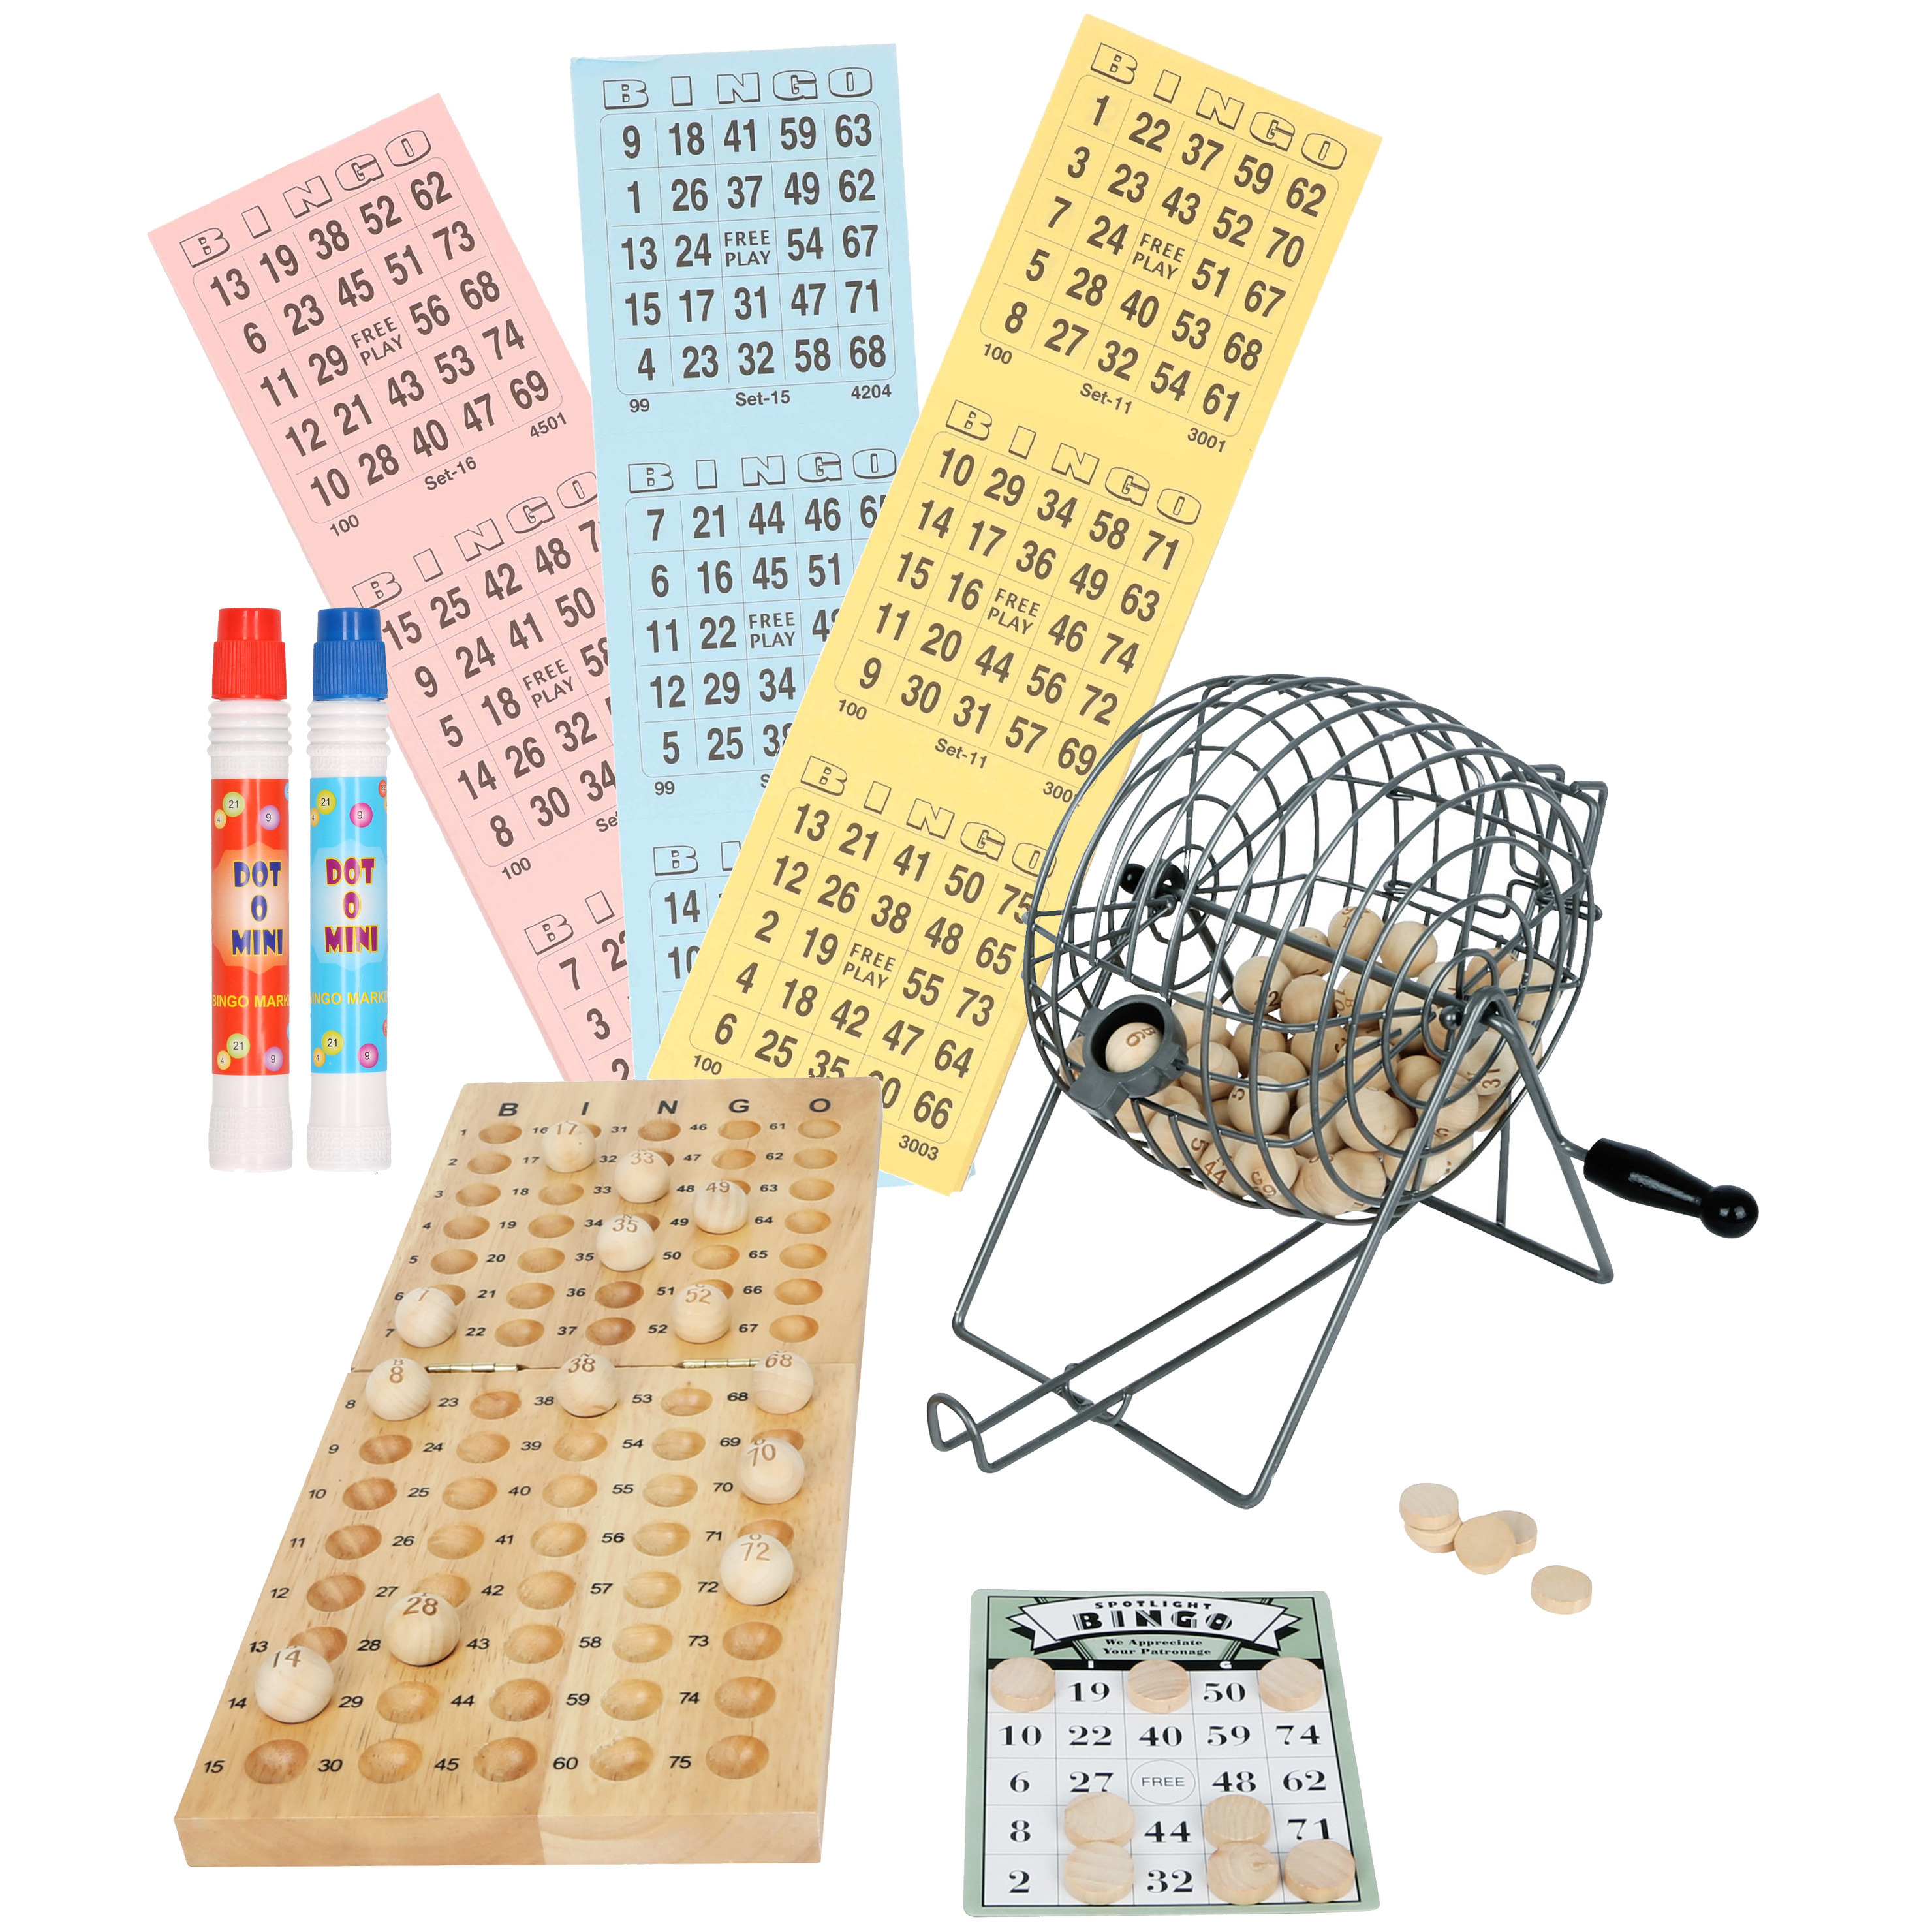 Bingospel hout-metaal 1-75 met bingomolen, fiches, 174 bingokaarten en 2 bingostiften